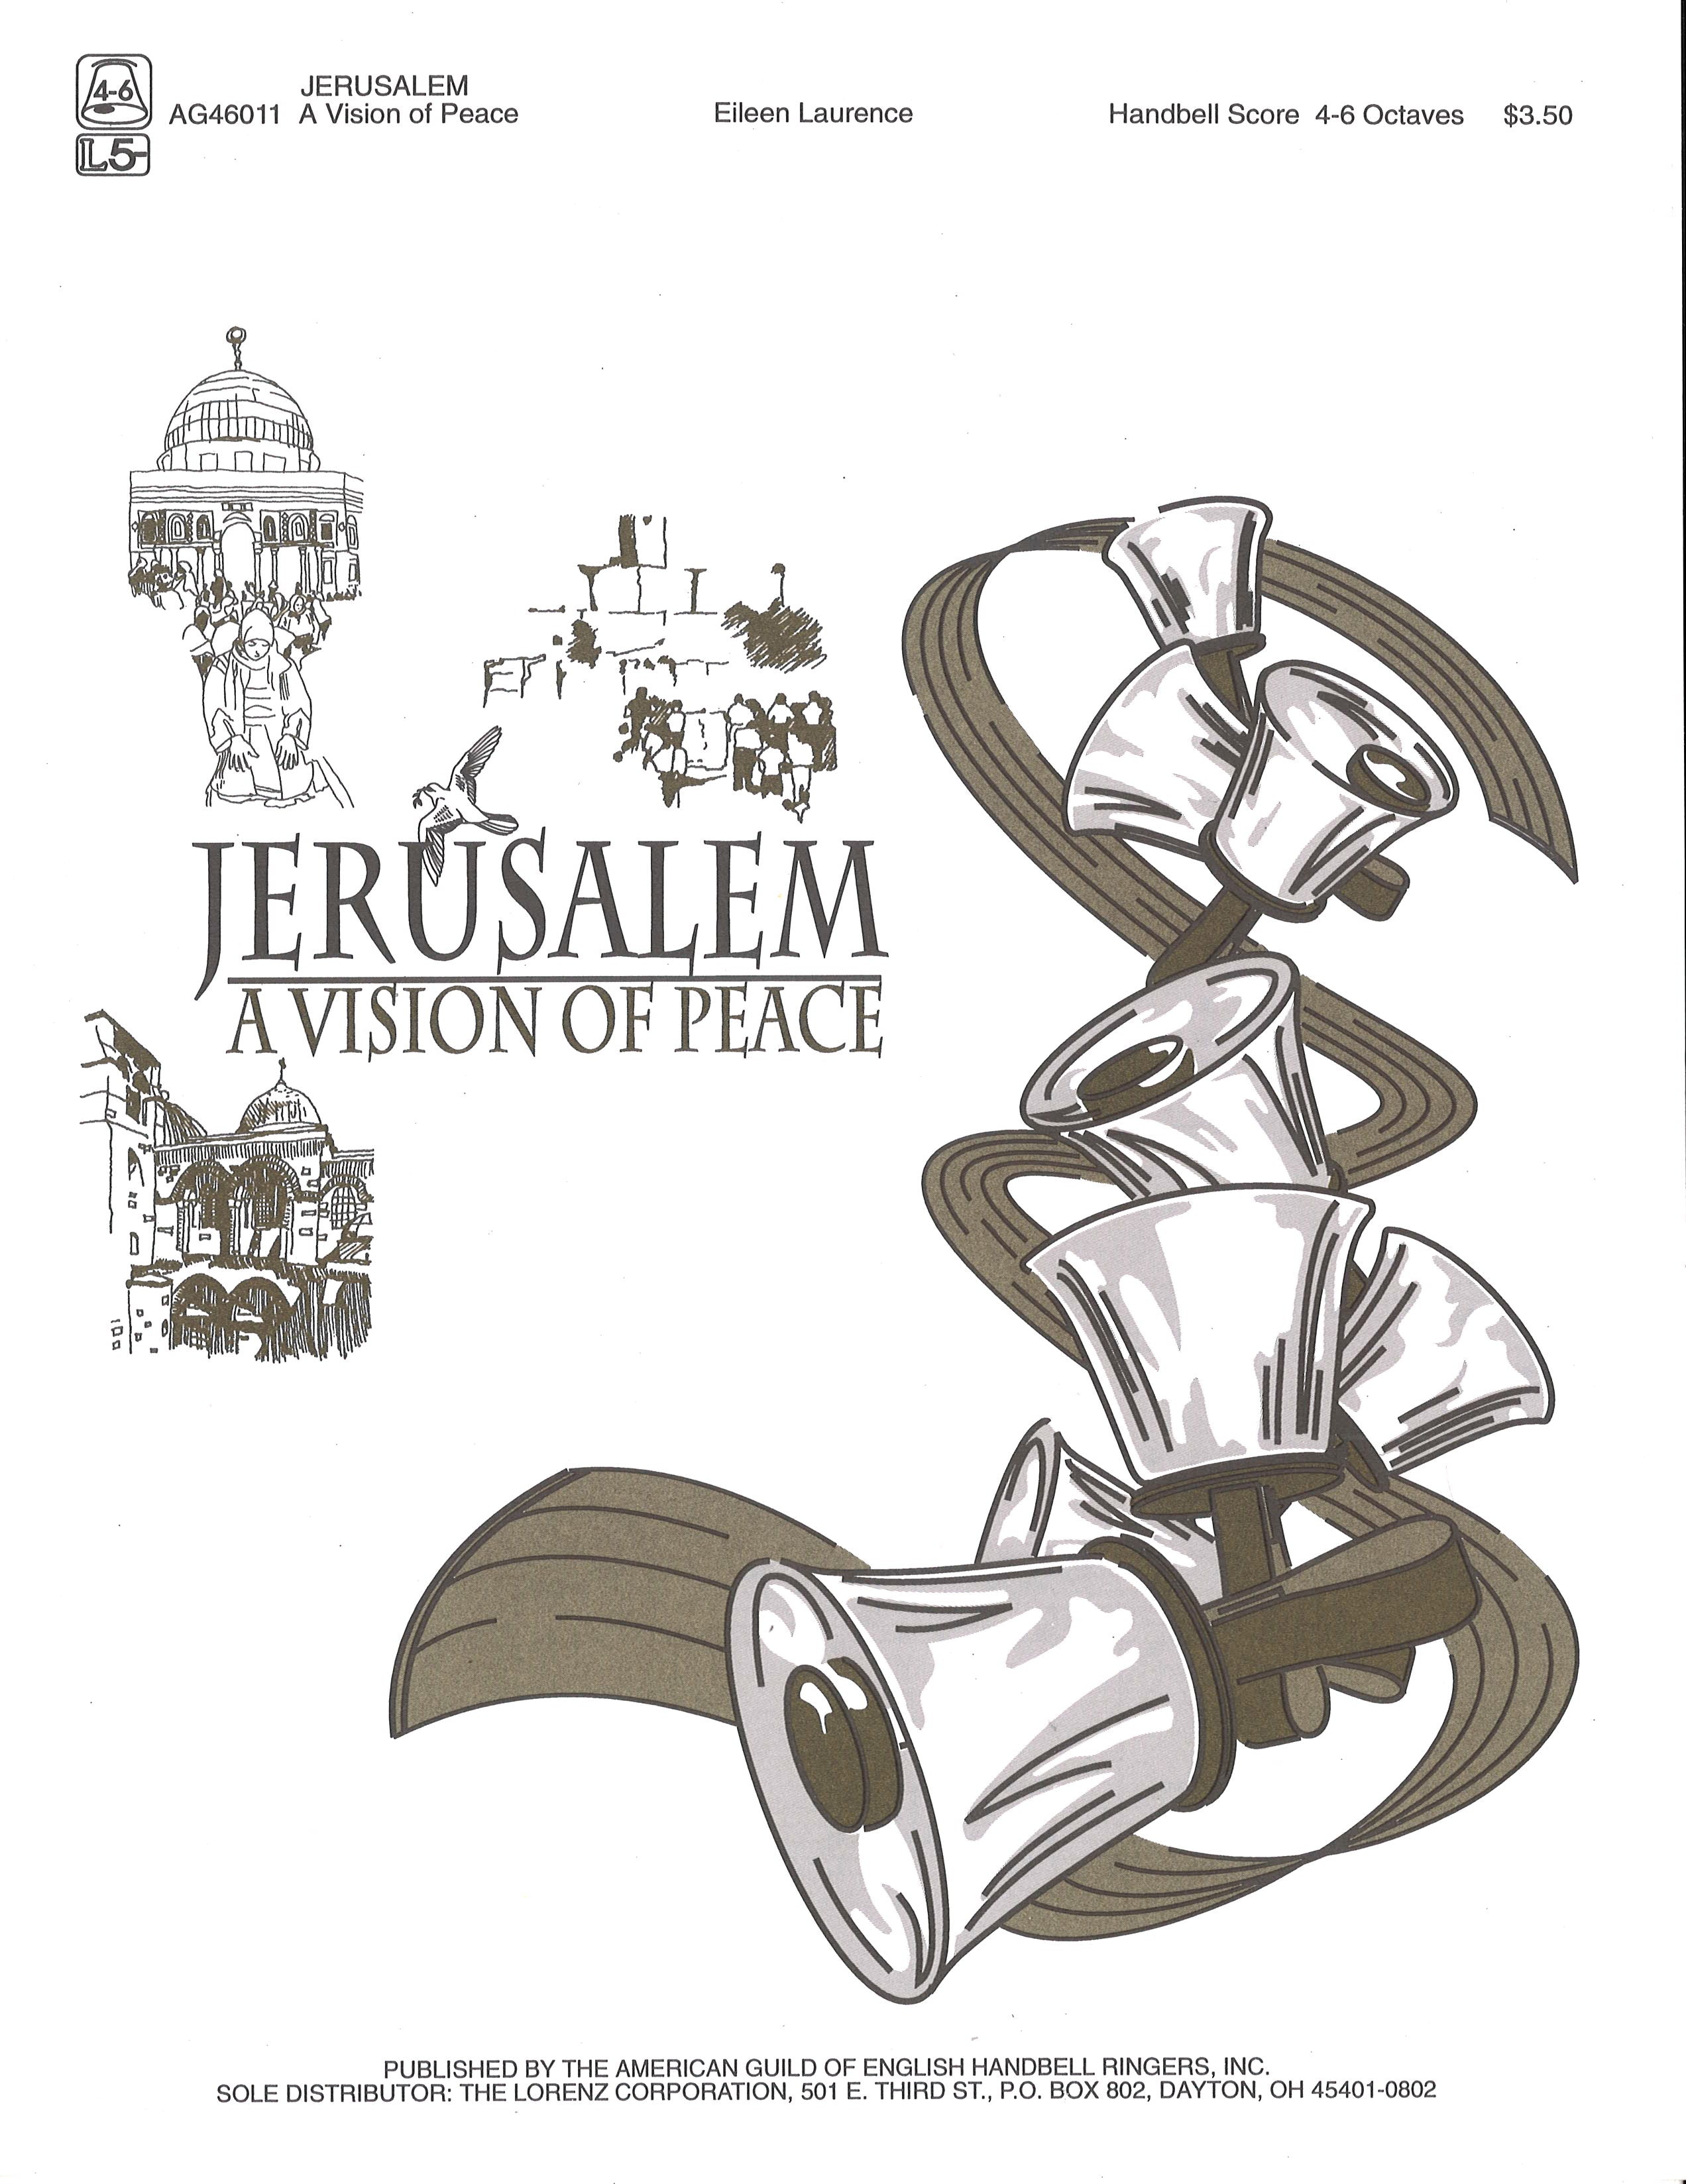 Jerusalem's Vision of Peace